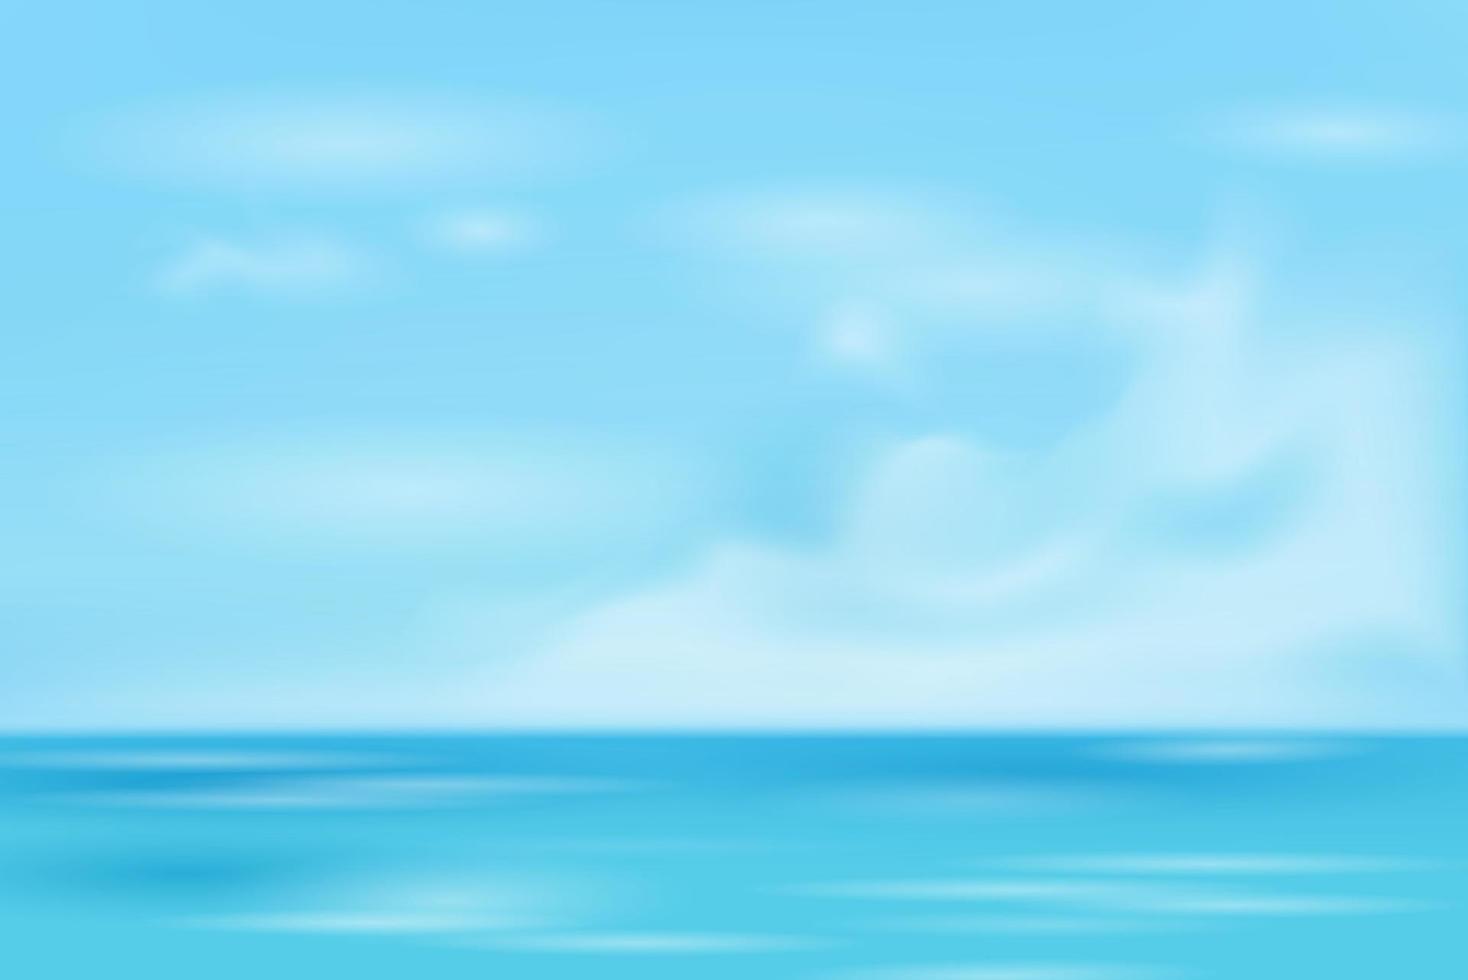 zeewater in de oceaan en de zomer blauwe hemelachtergrond vector